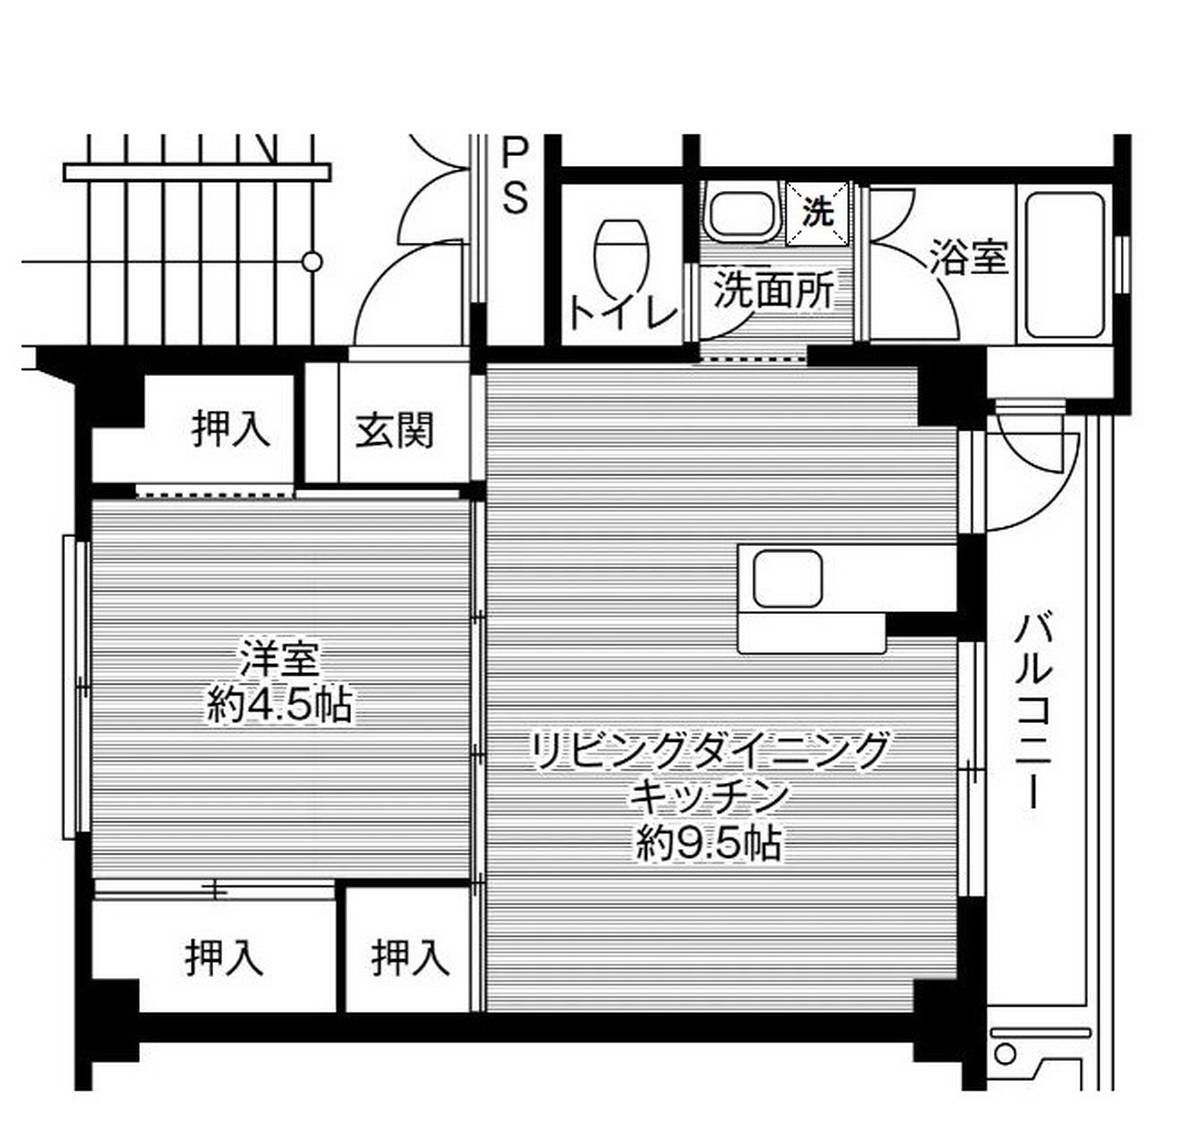 1LDK floorplan of Village House Shimouchi in Seki-shi